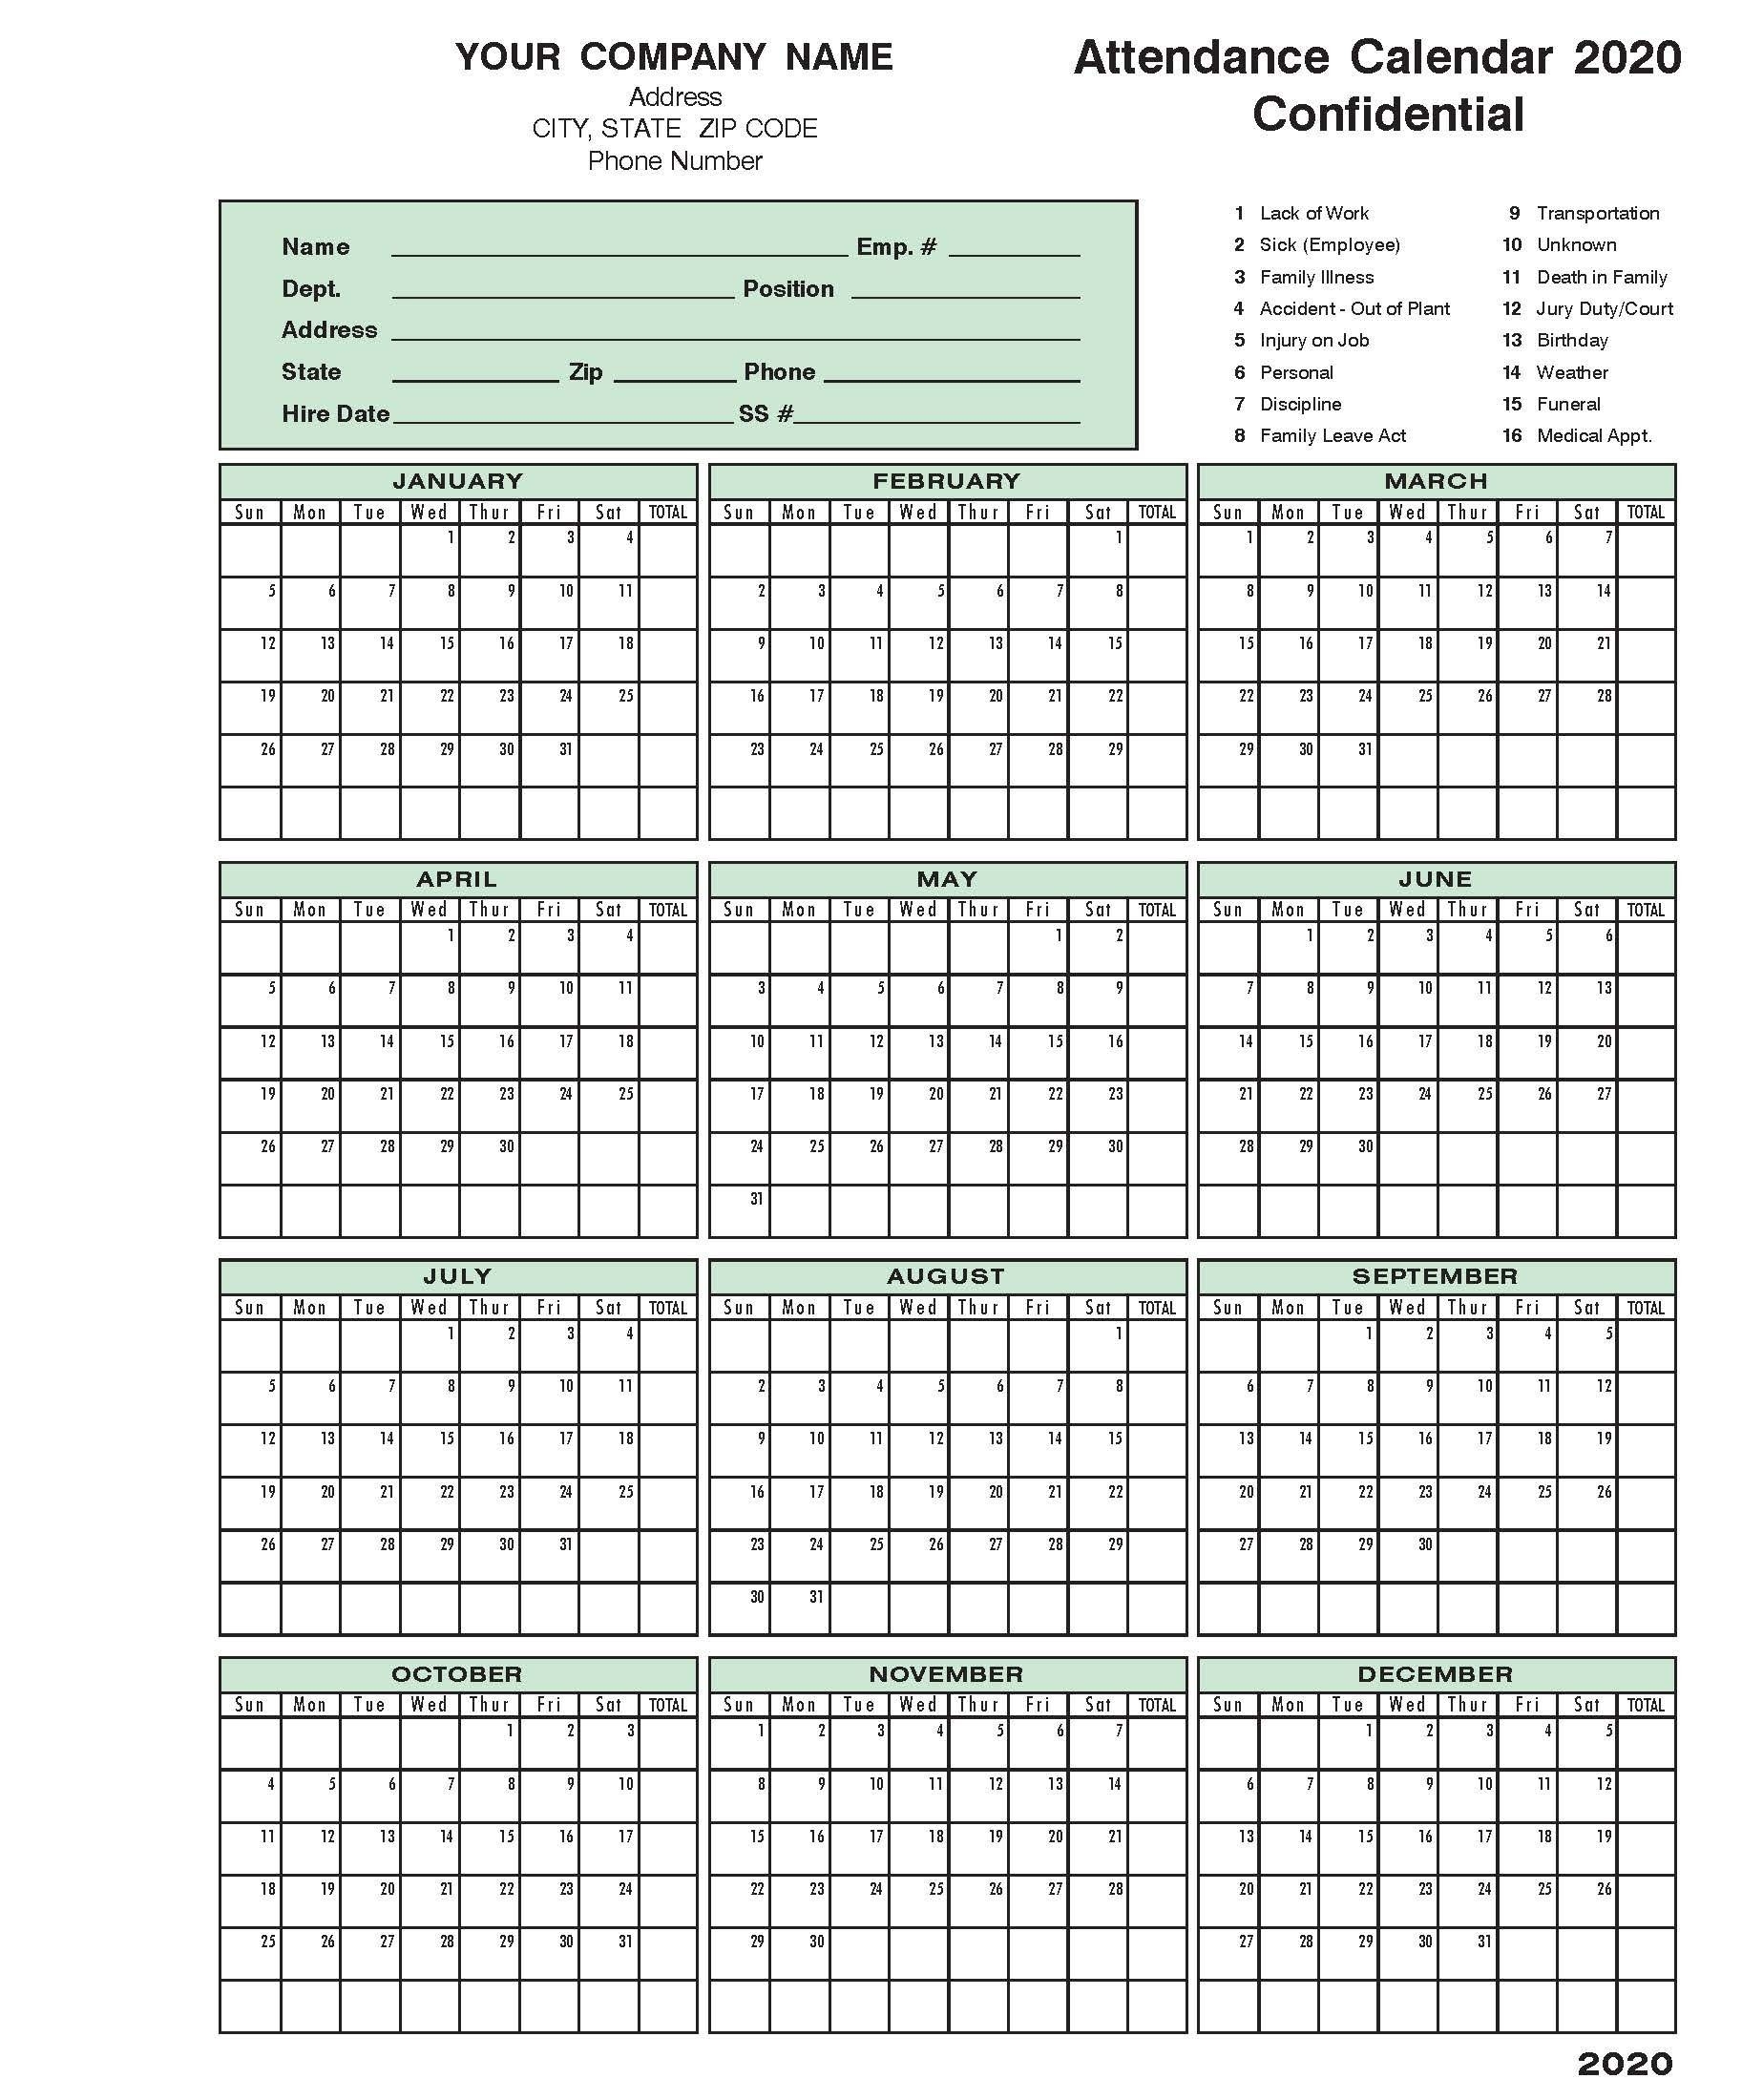 2020 Attendance Calendar | Calendar Template, Calendar 2020-Employee Attendance Calendar 2021 Printable